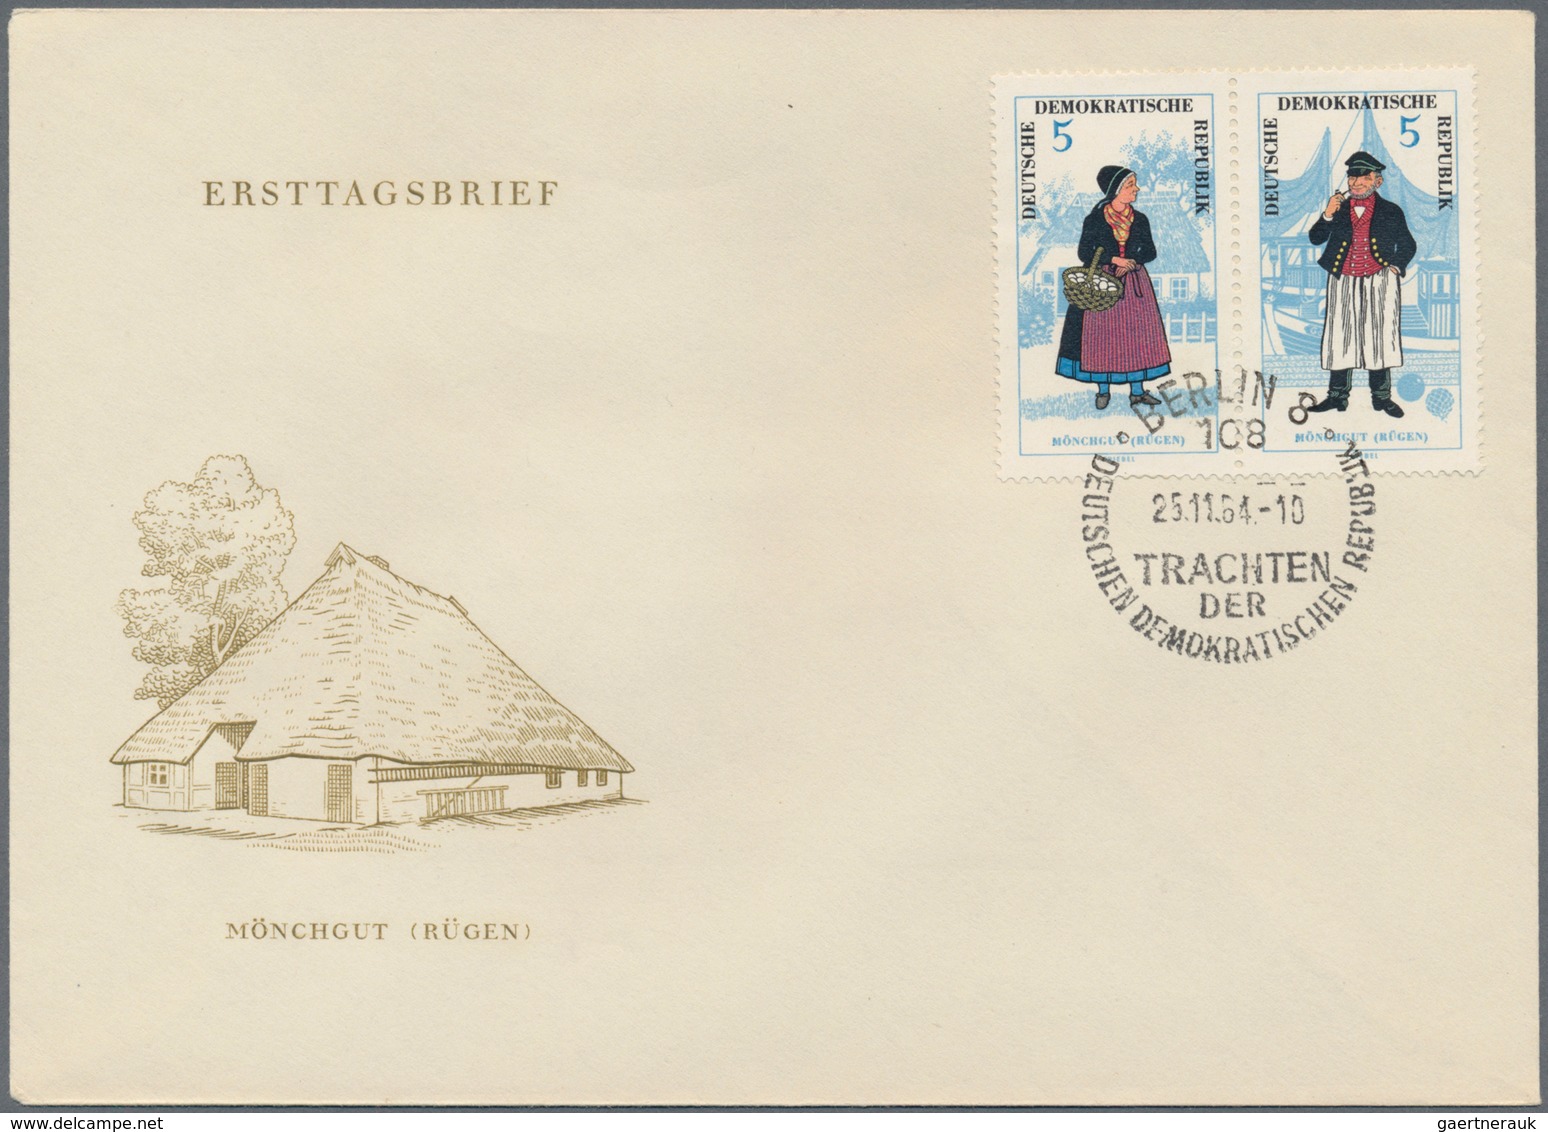 DDR: 1949/1990, vielseitiger Bestand von fast 1.500 Briefen und Karten mit philatelistischen Belegen